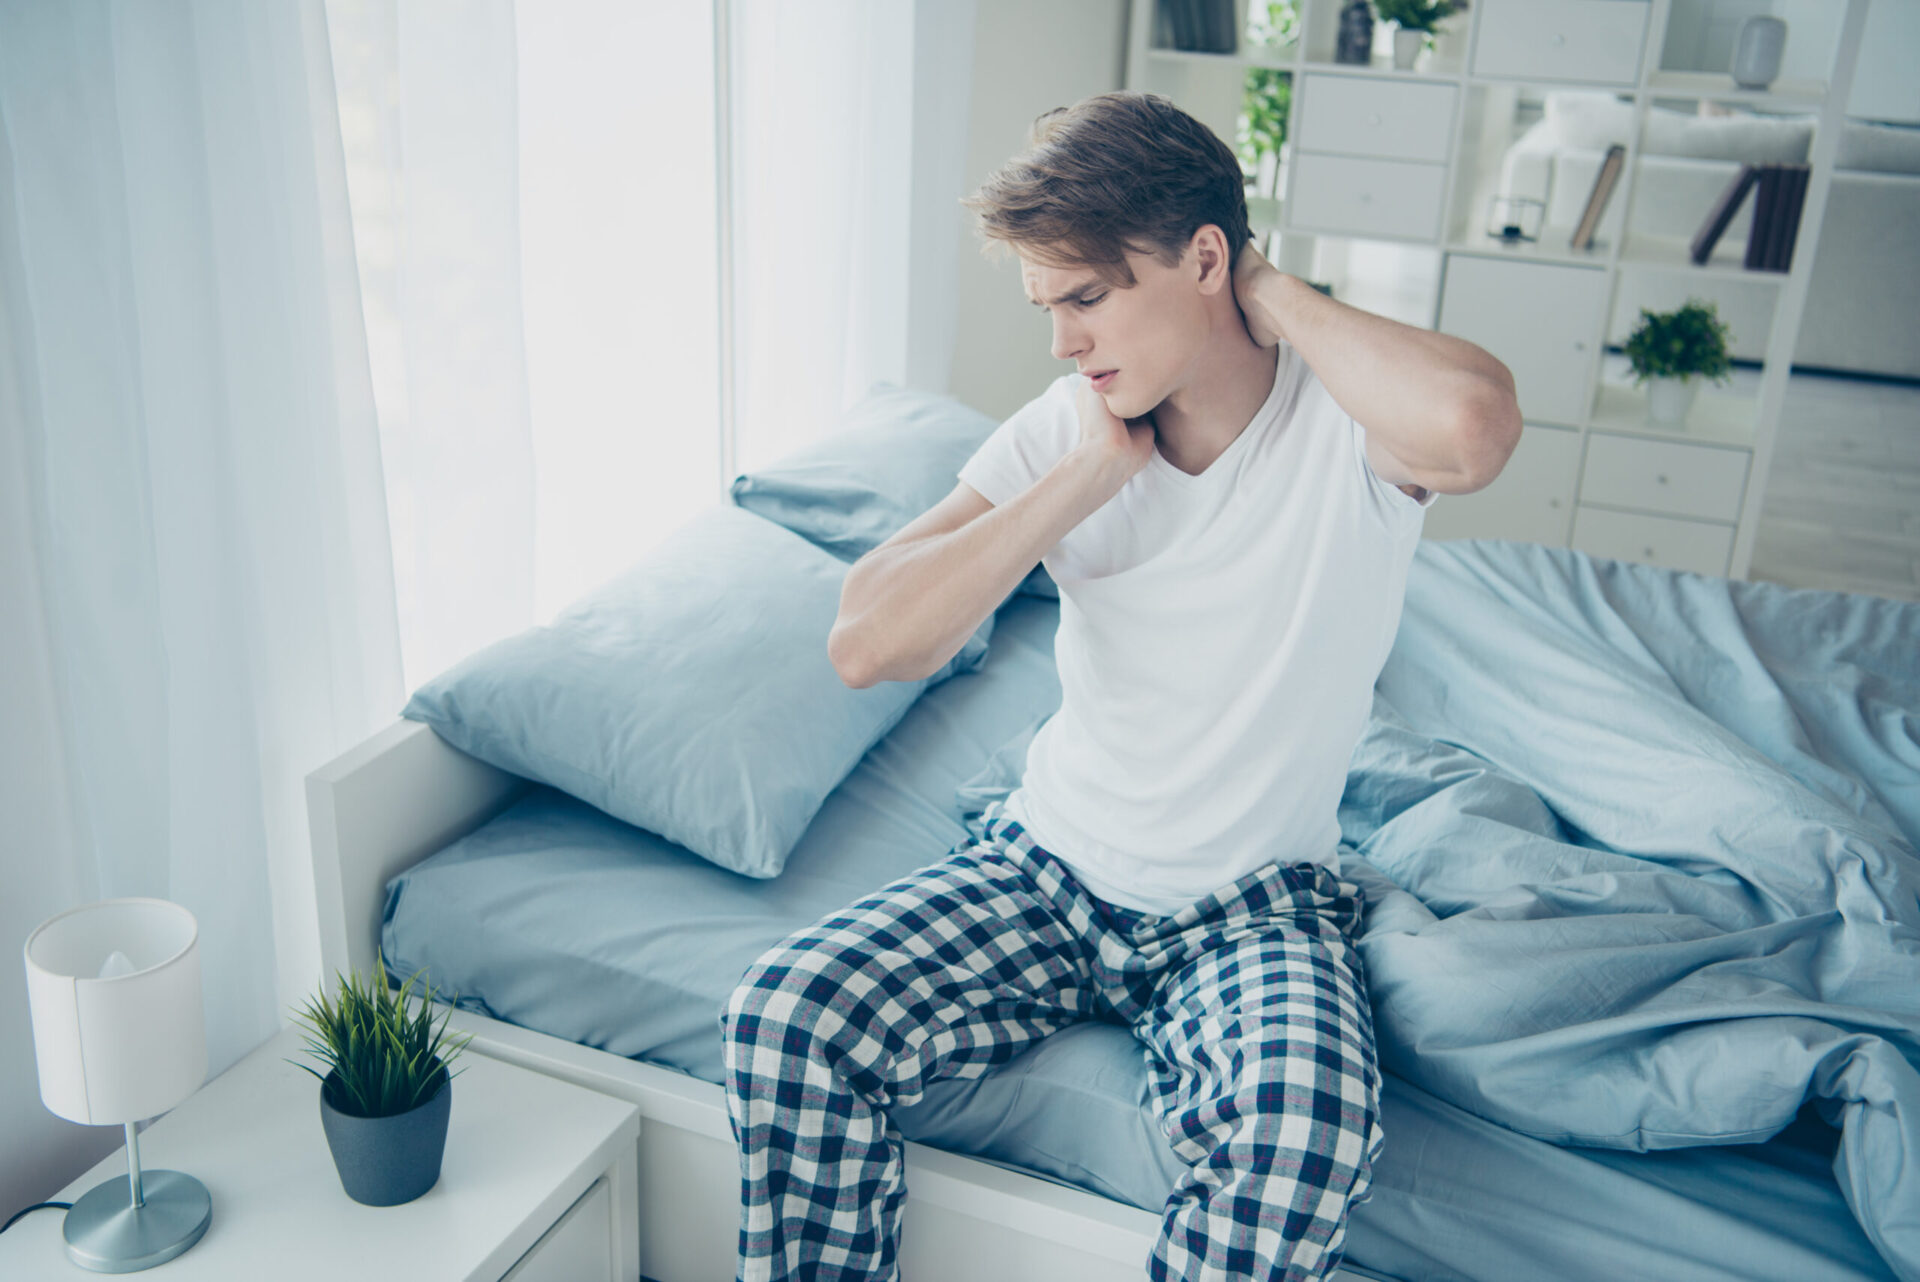 Portret zaniepokojonego, smutnego mężczyzny siedzącego na łóżku, obudzonego z bólem szyi i napięciem mięśni, ubranego w kraciaste białe piżamowe spodnie, w domu.